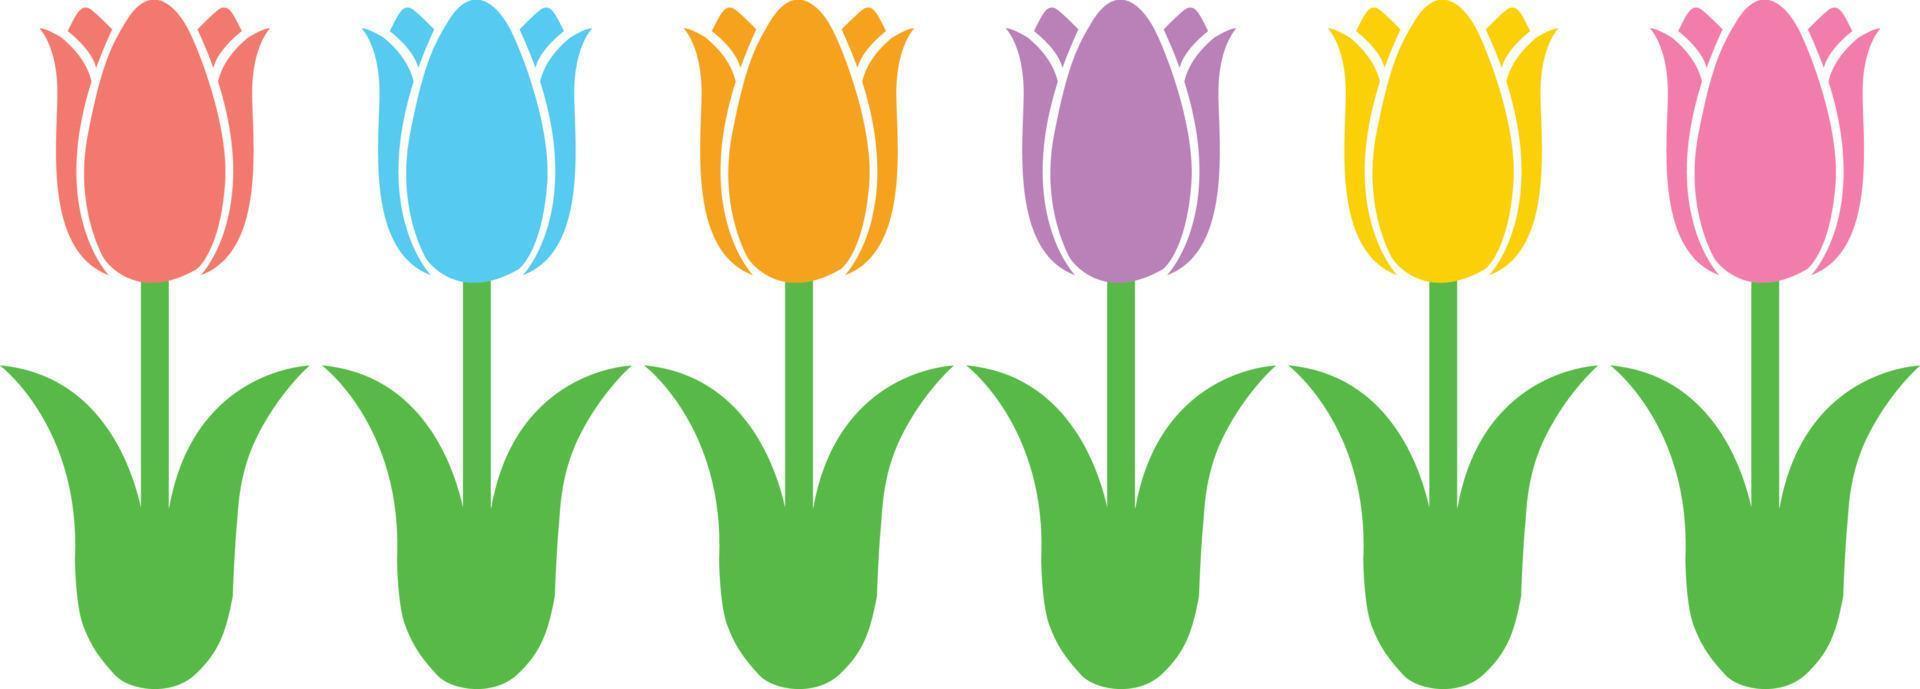 Tulips Flower 1 6893212 Vector Art at Vecteezy